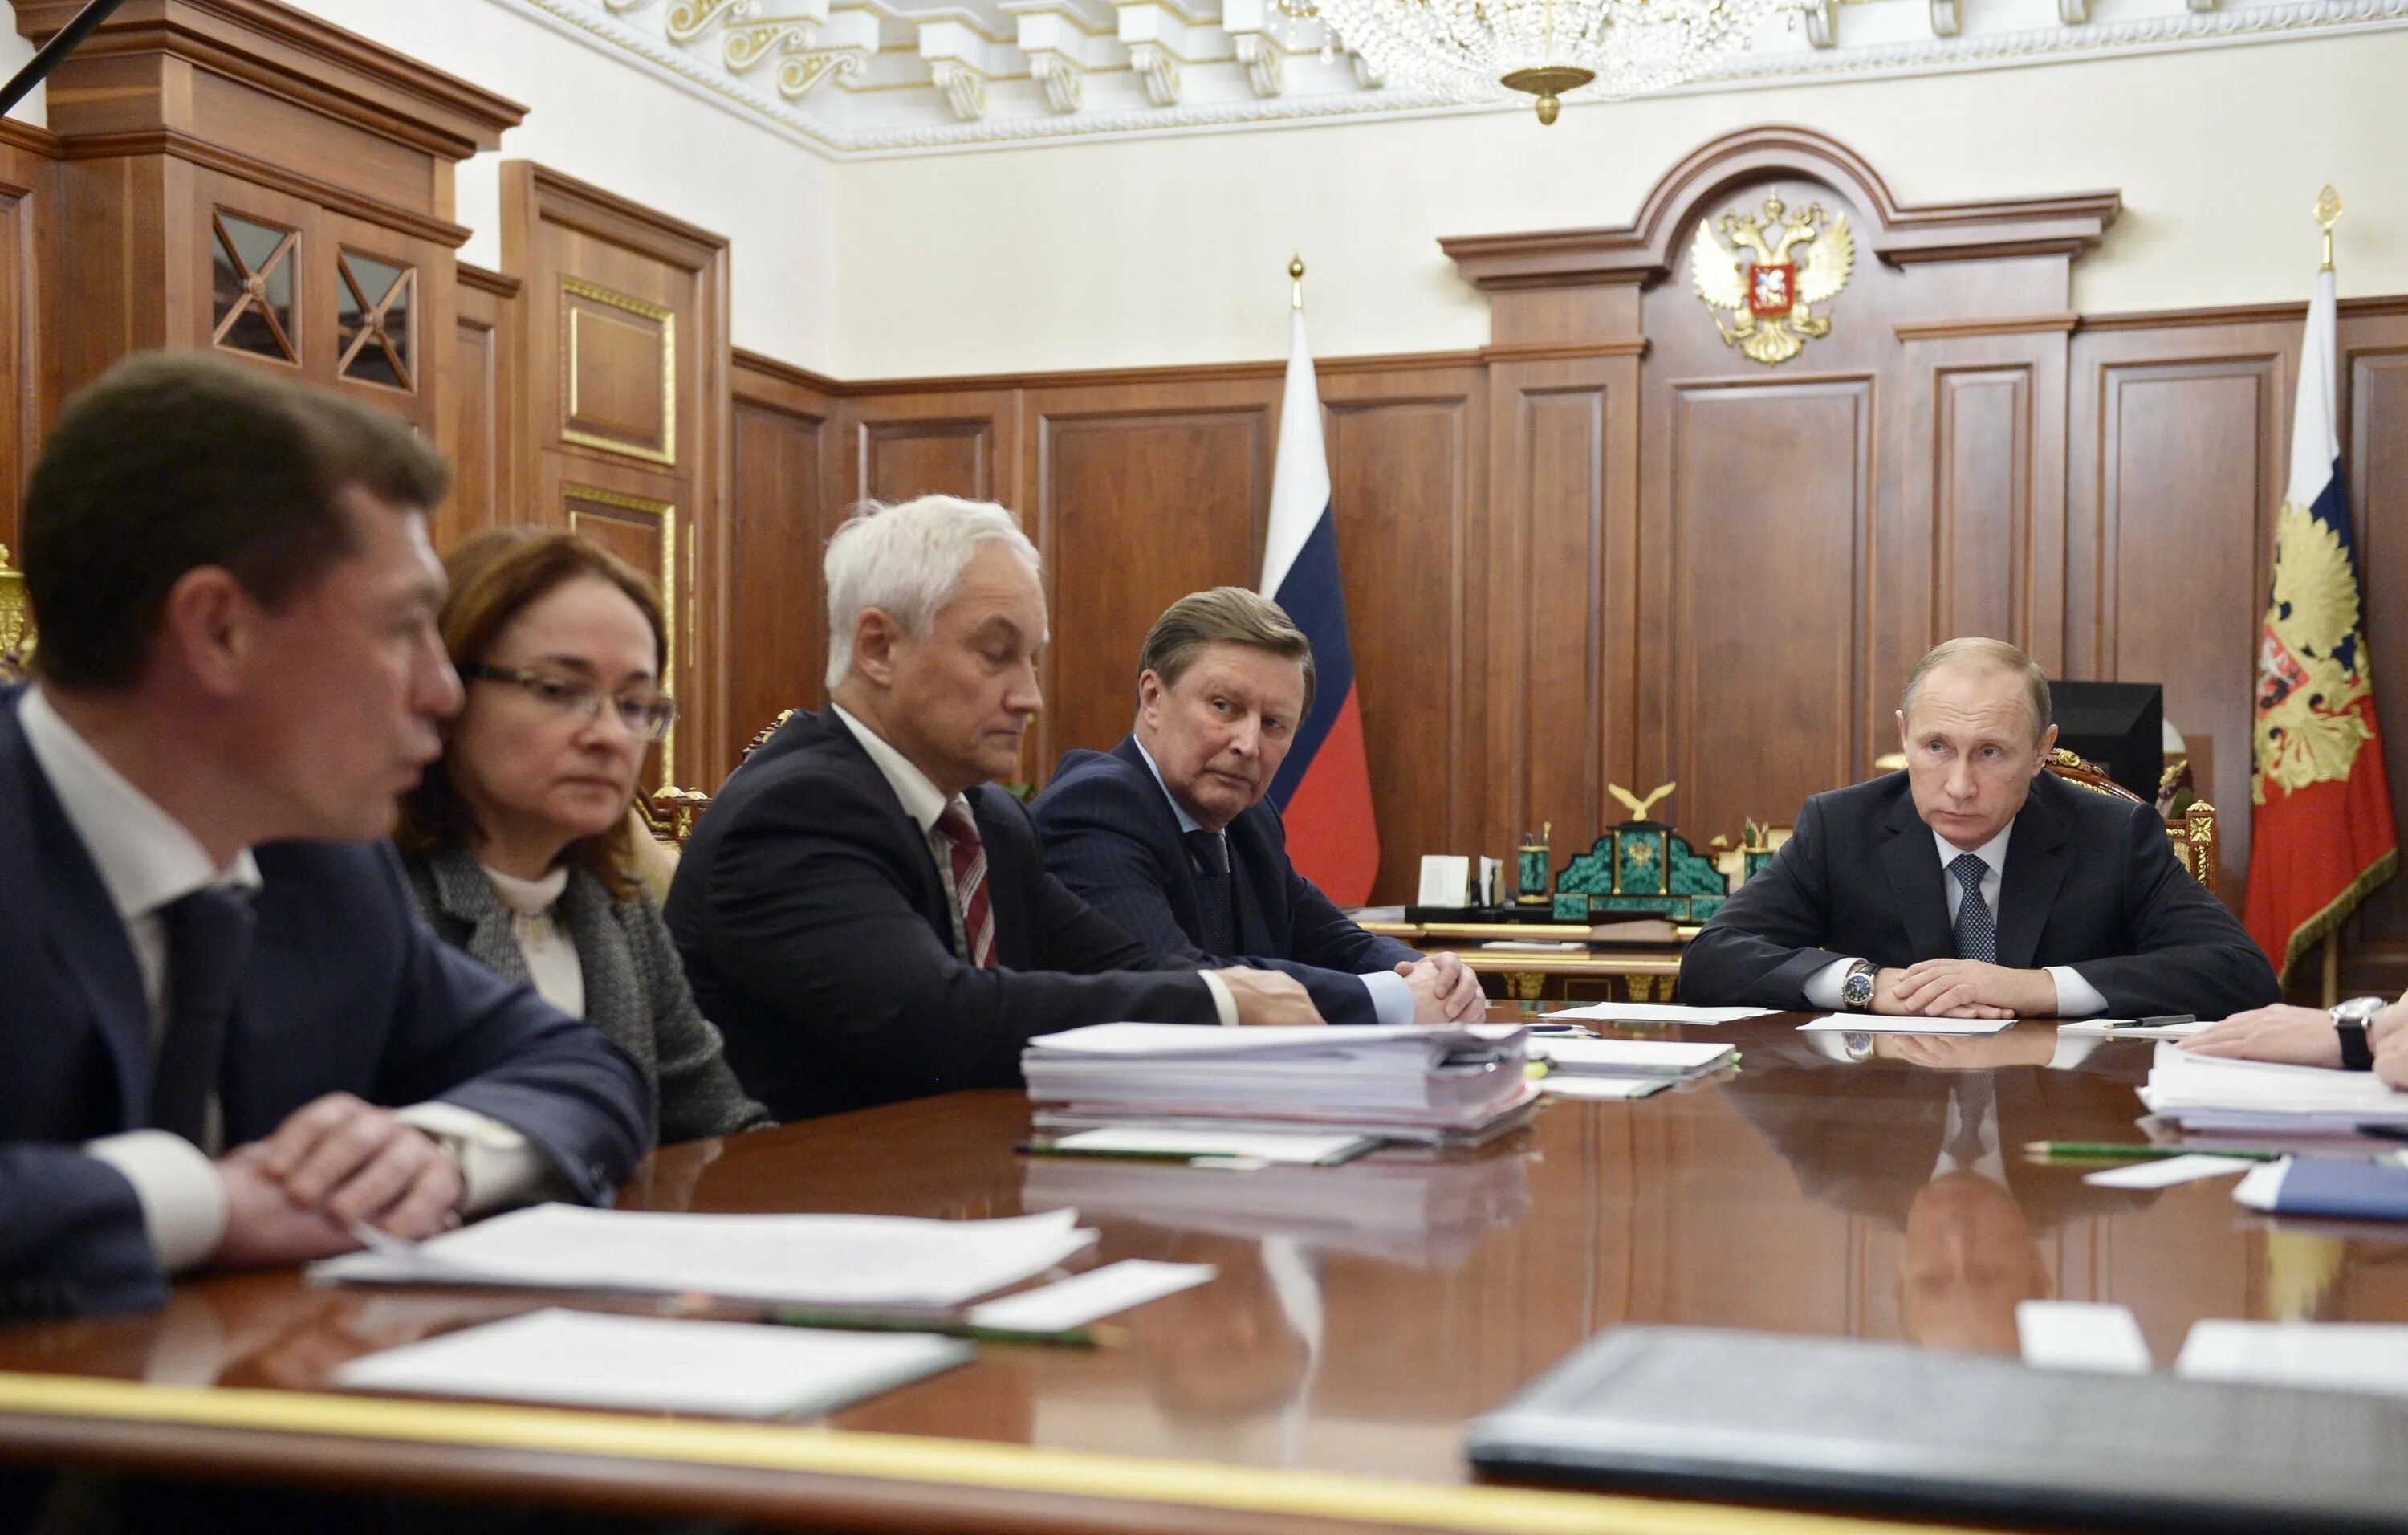 Совещание с членами правительства. Заседание кабинета министров и Путина. Заседание членов правительства.